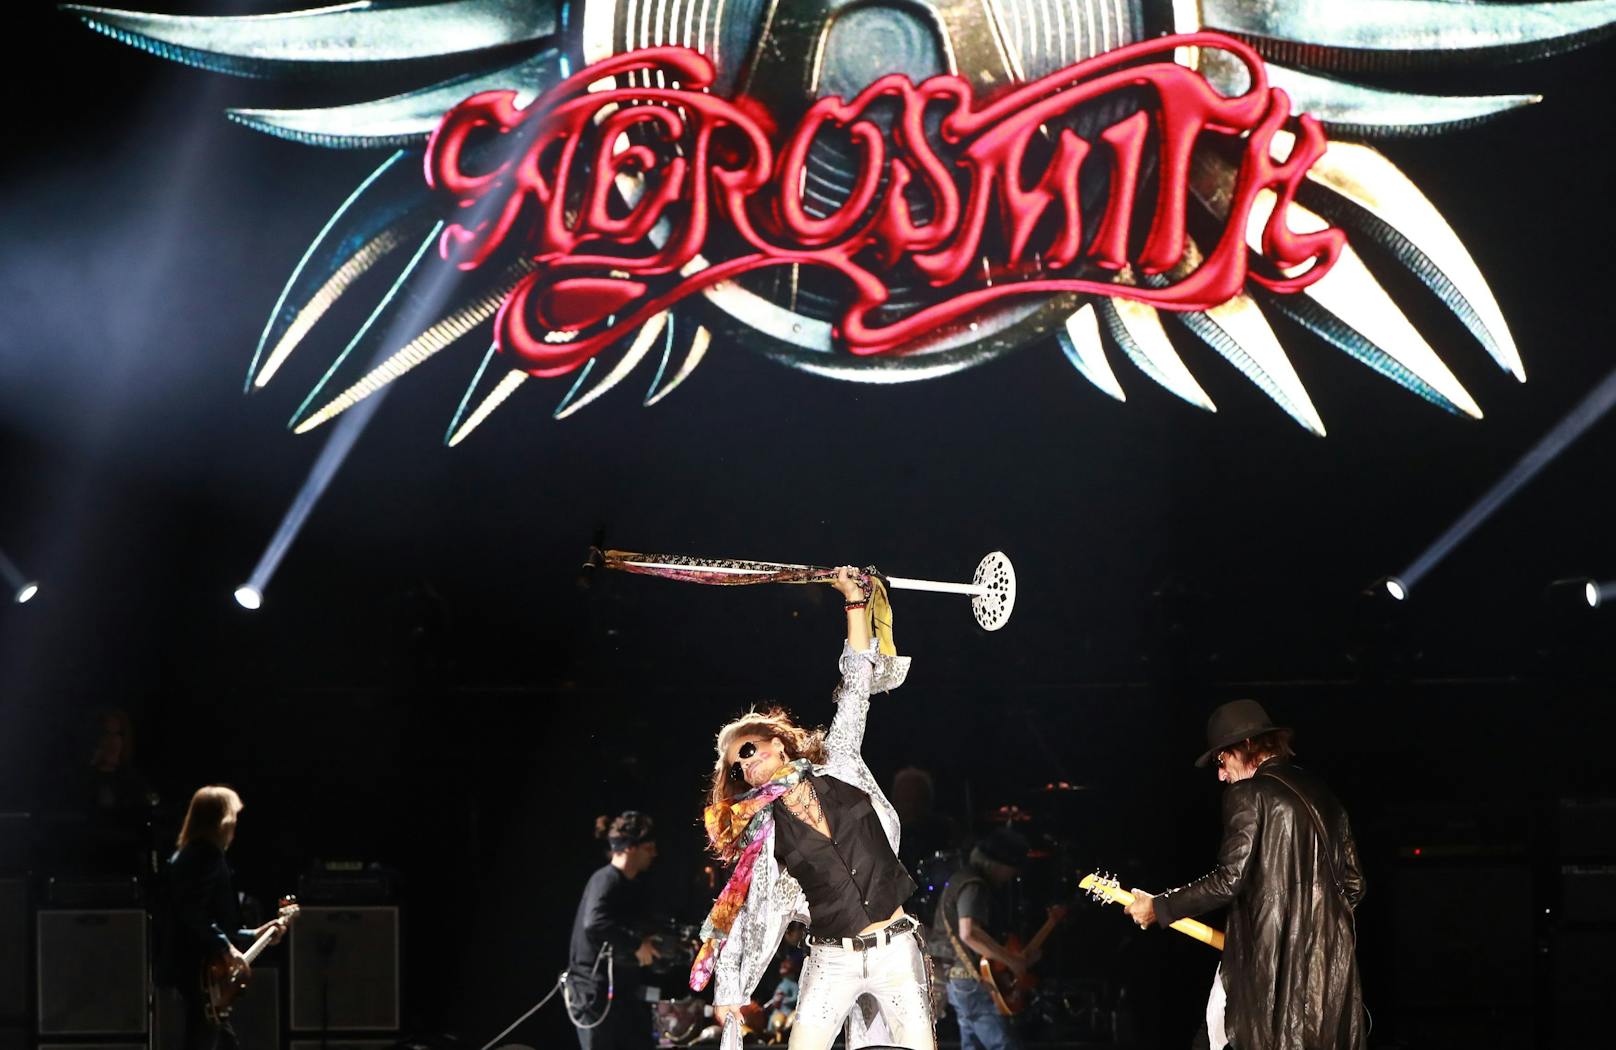 Weltweit haben <strong>Aerosmith</strong> bislang über 150 Millionen Tonträger verkauft und gehört damit zu den erfolgreichsten Rock-Bands der USA.